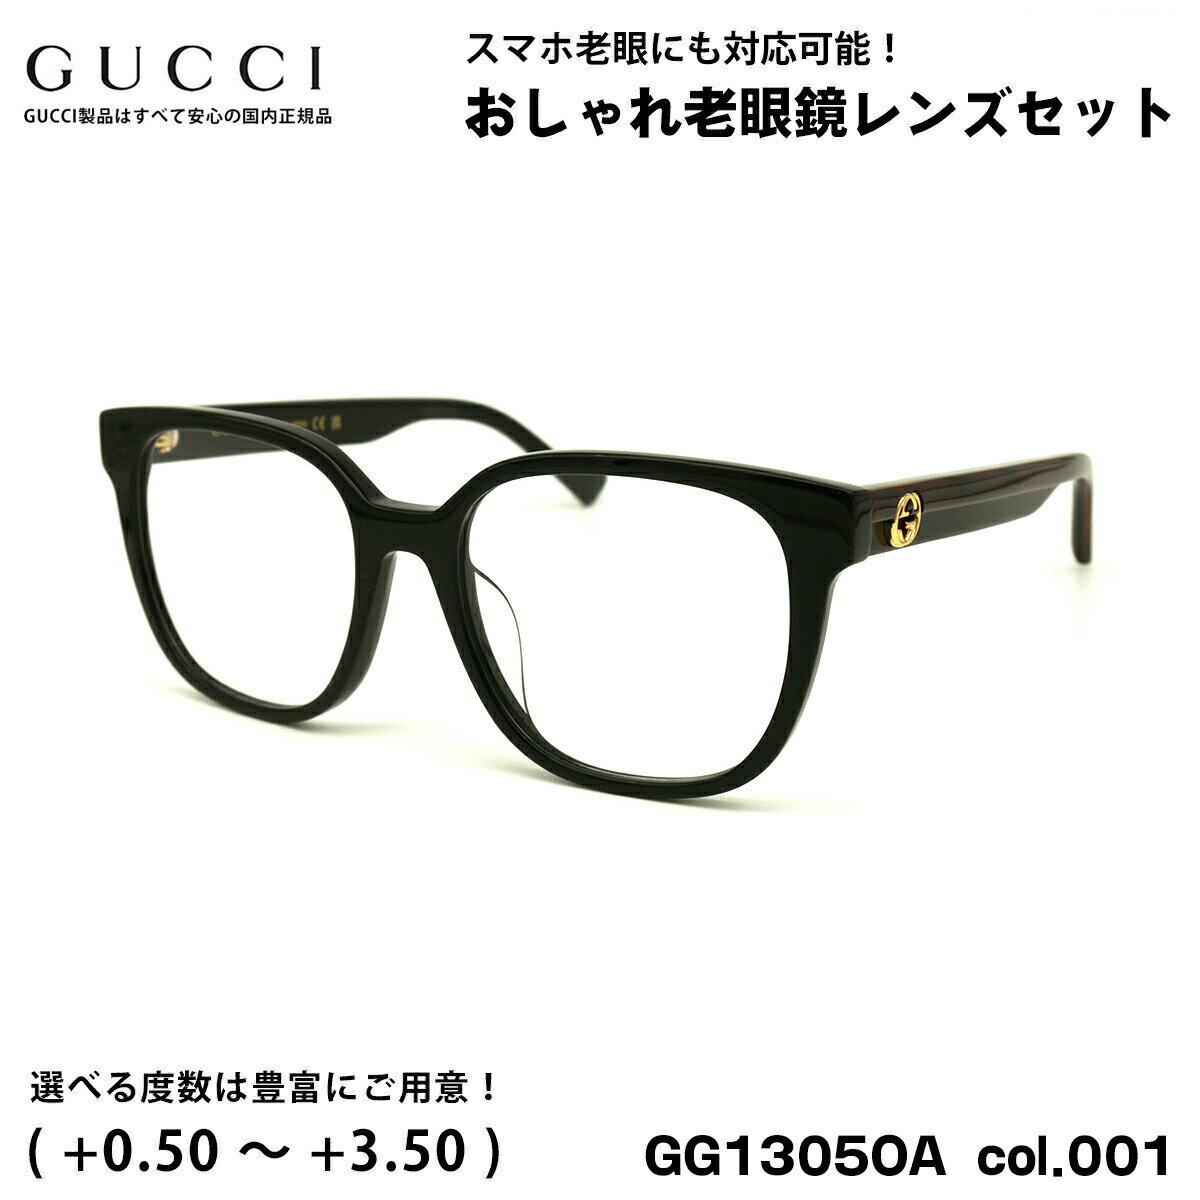 グッチ 老眼鏡 GG1305OA col.001 54mm GUCCI アジアンフィット 国内正規品 新品 UVカット ブルーライトカット